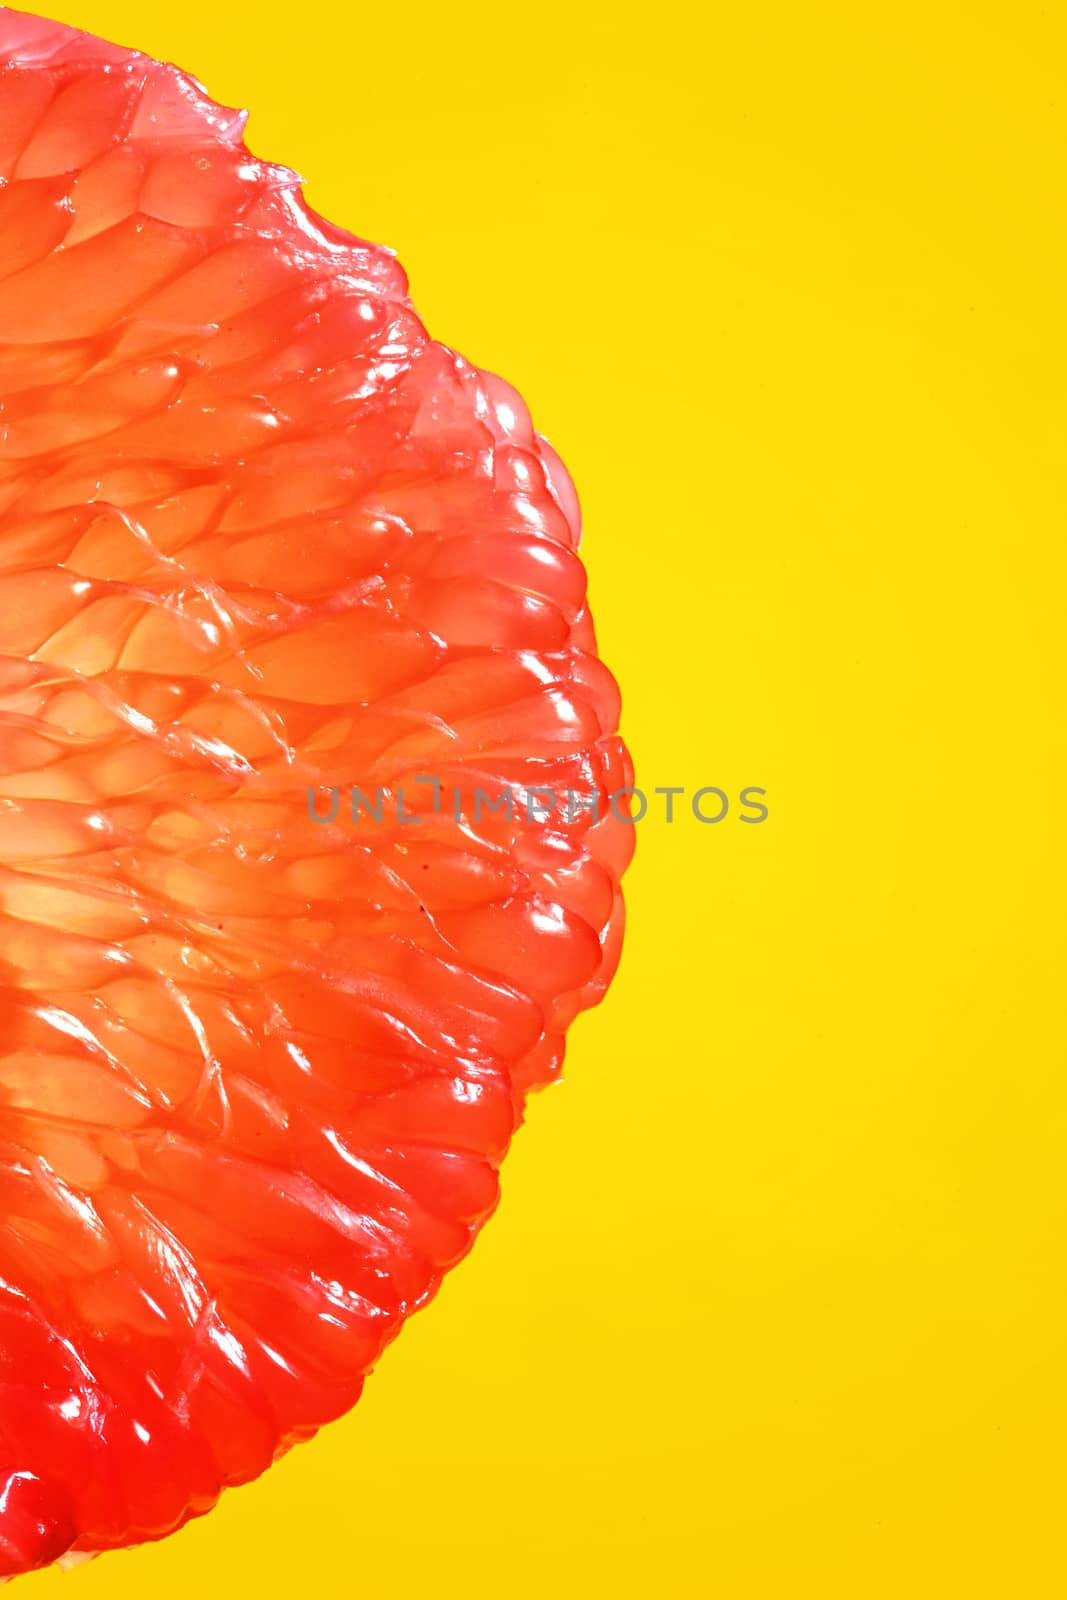 Peeled Slice Of Juicy Grapefruit by jordachelr